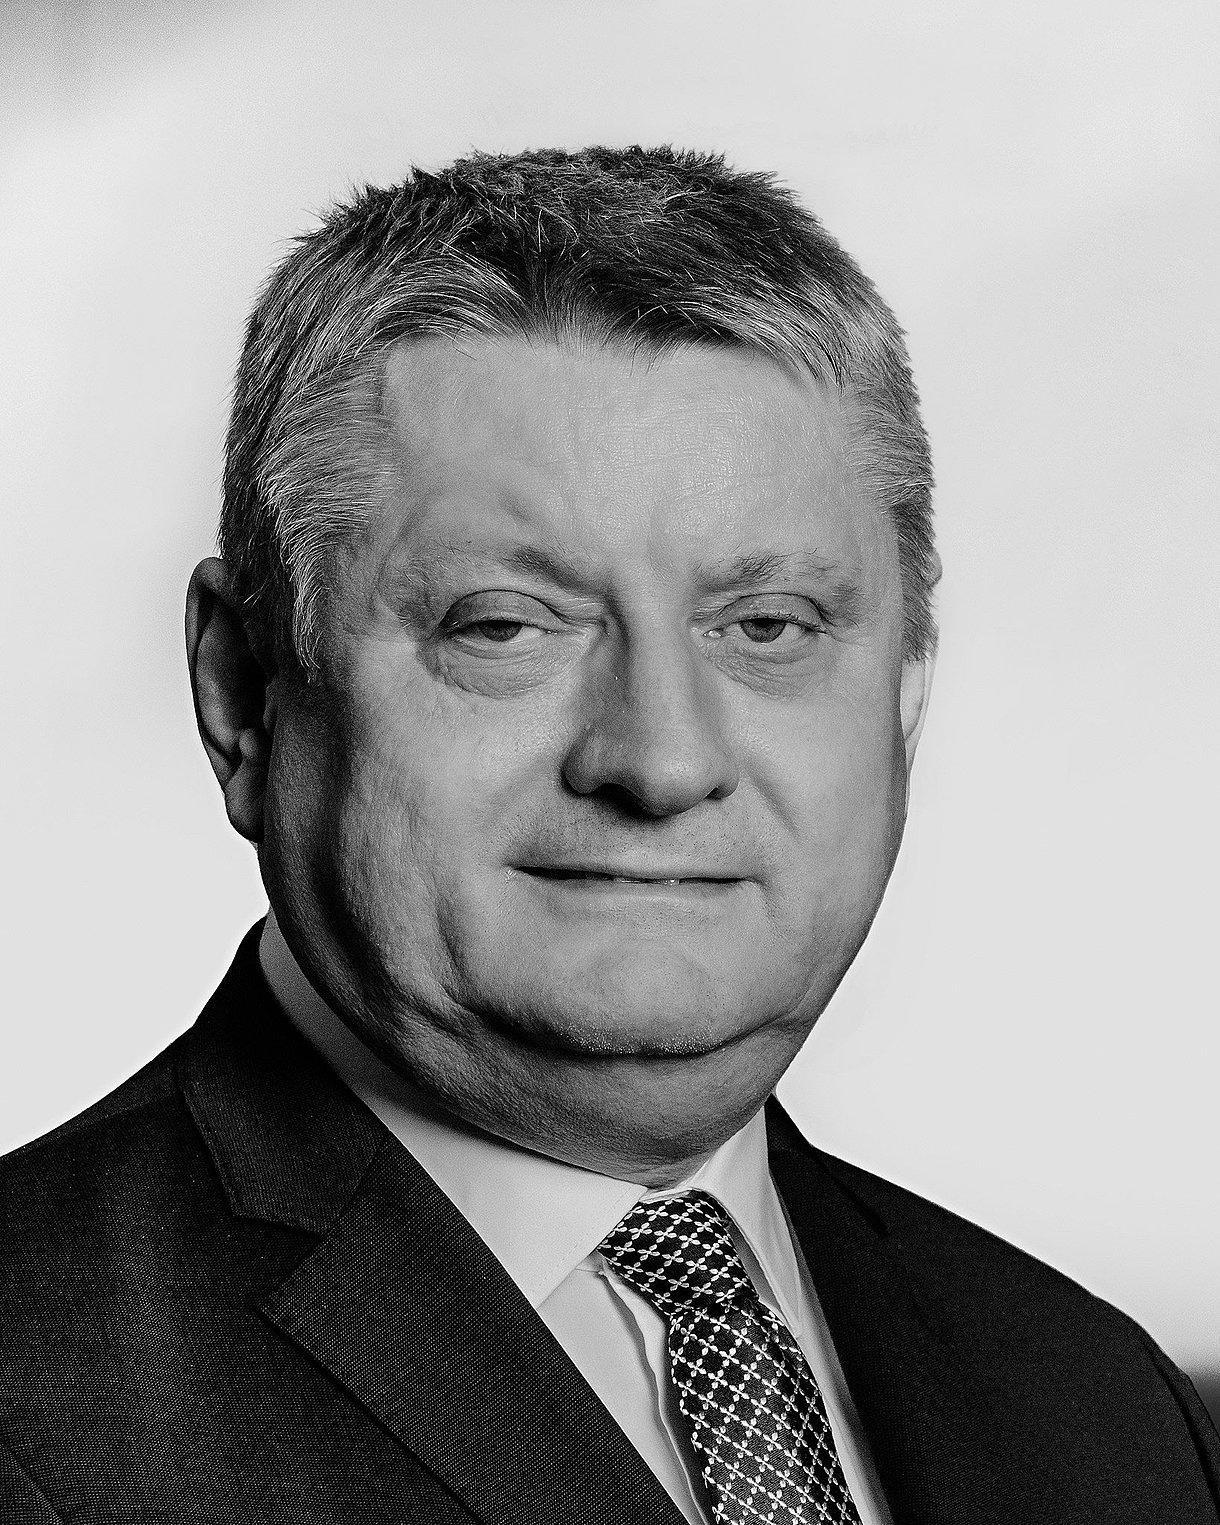 Foto: Porträtbild von Hermann Gröhe, Jurist und ehemaliger Bundesgesundheitsminister von 2013 bis 2018.